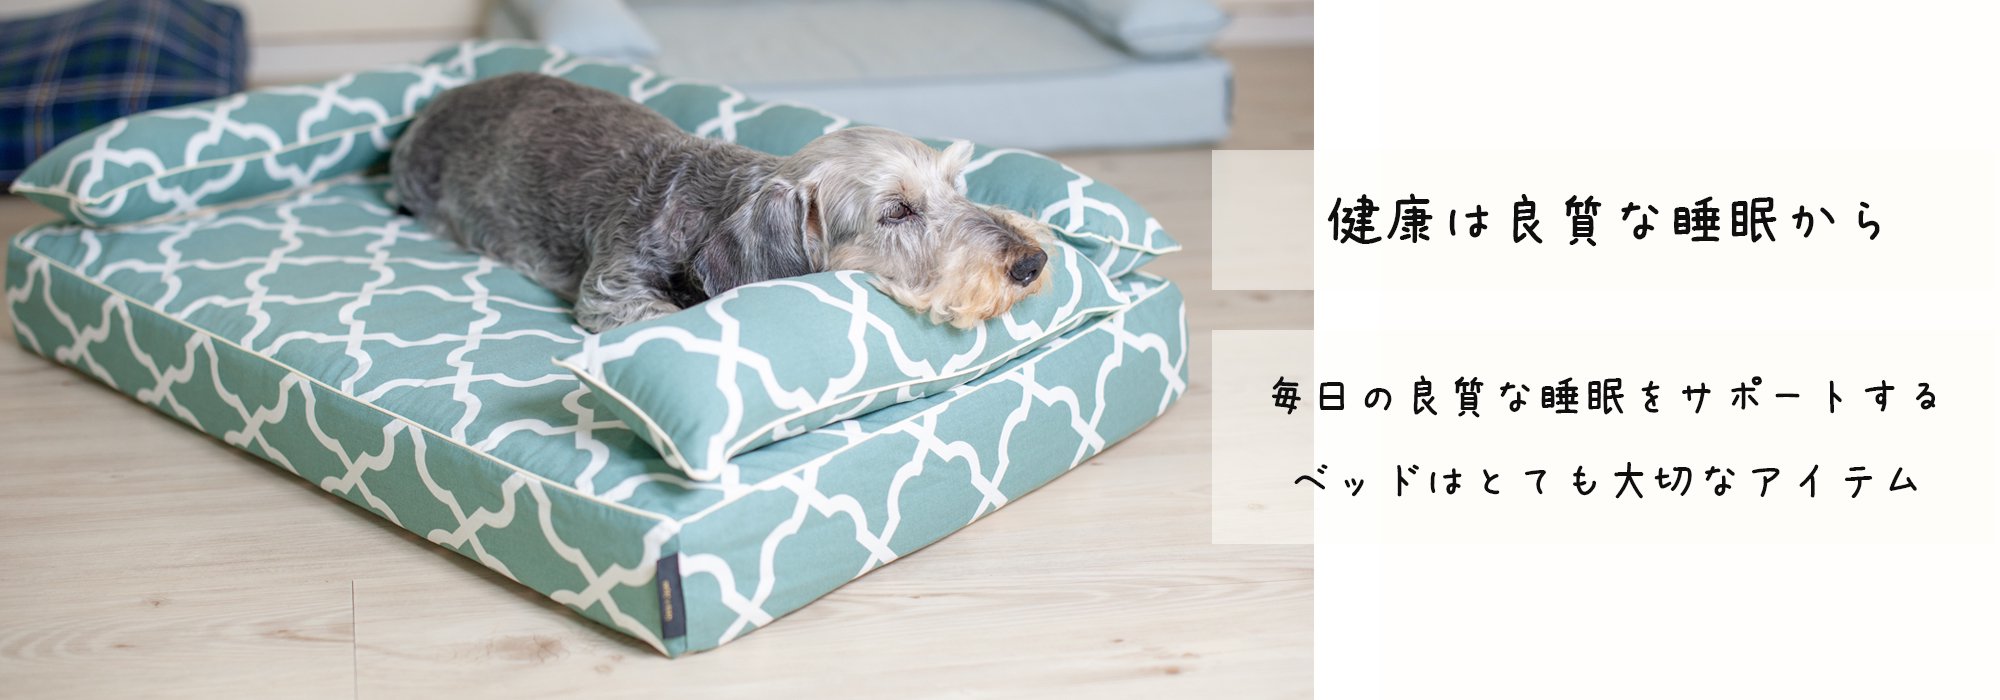 愛犬のベッドの「見直しと購入」のタイミング